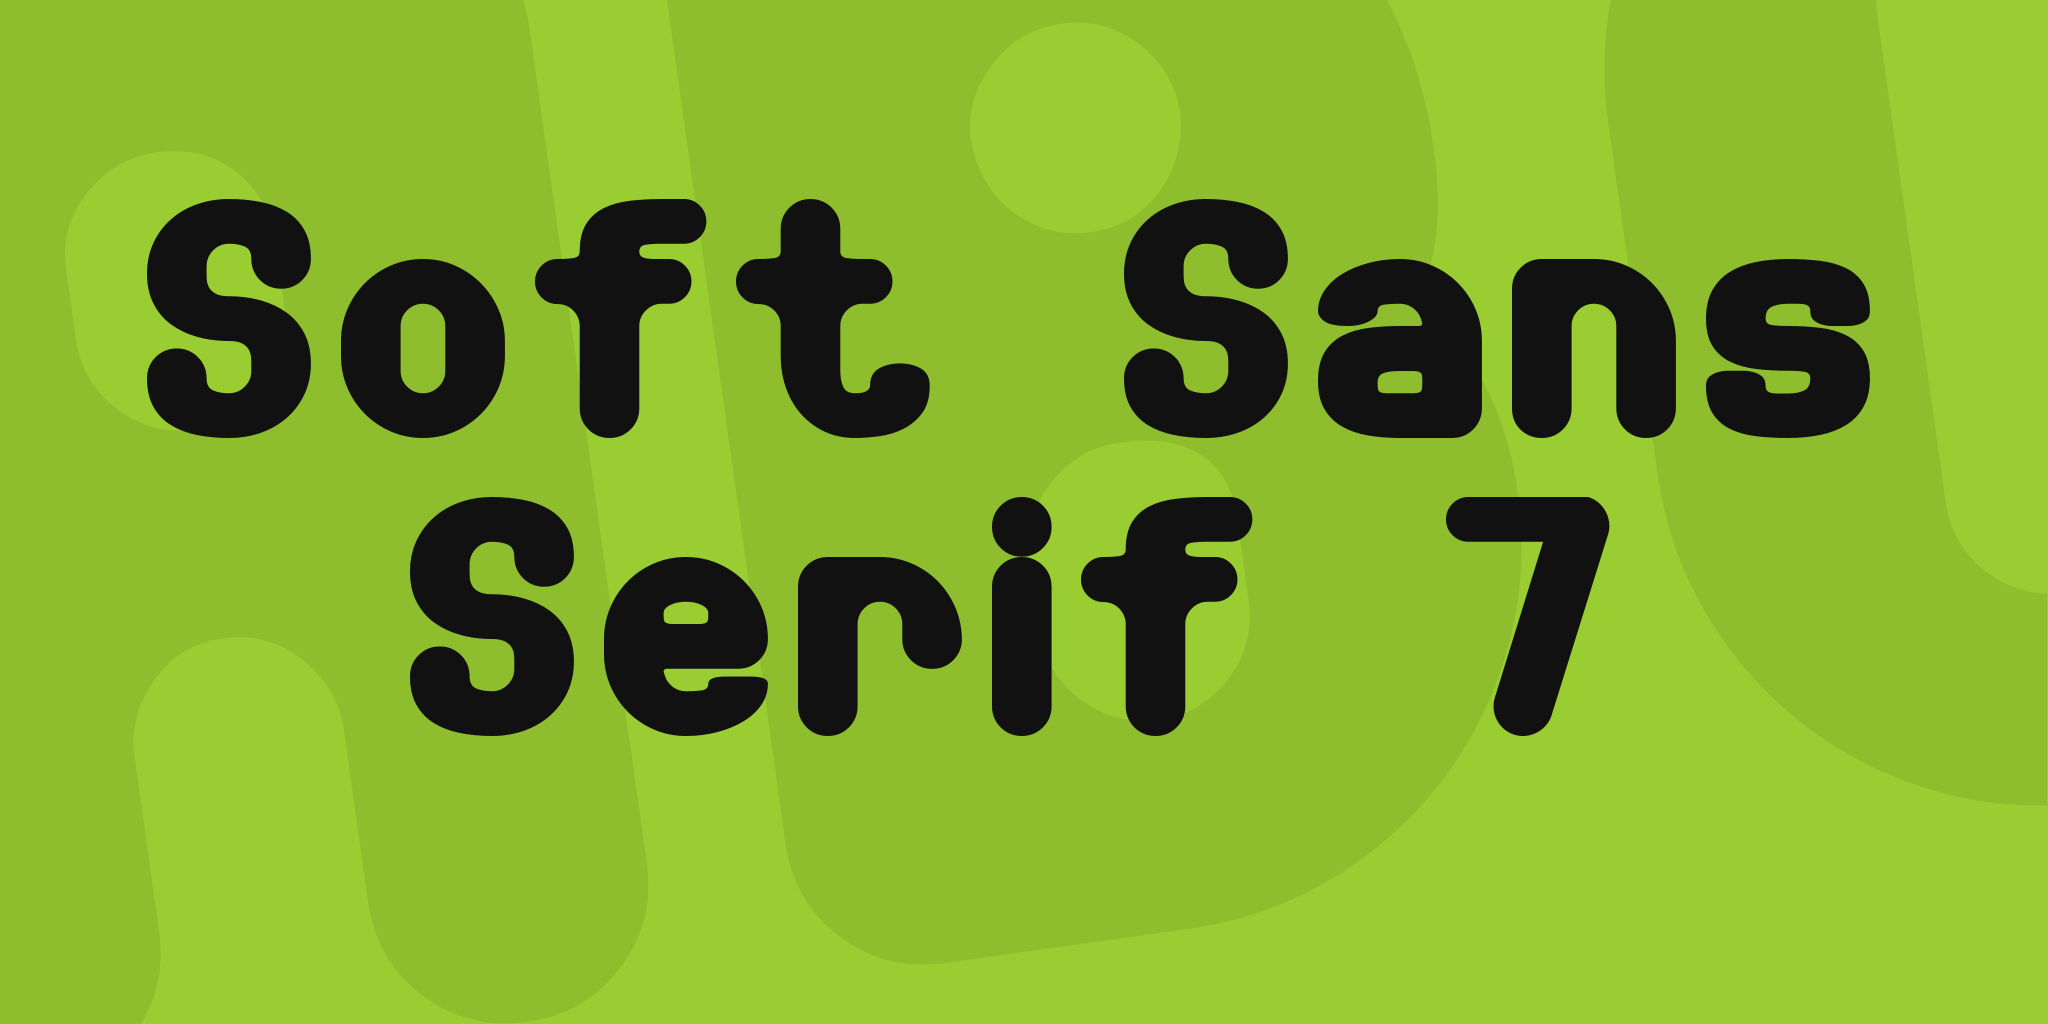 Soft Sans Serif 7